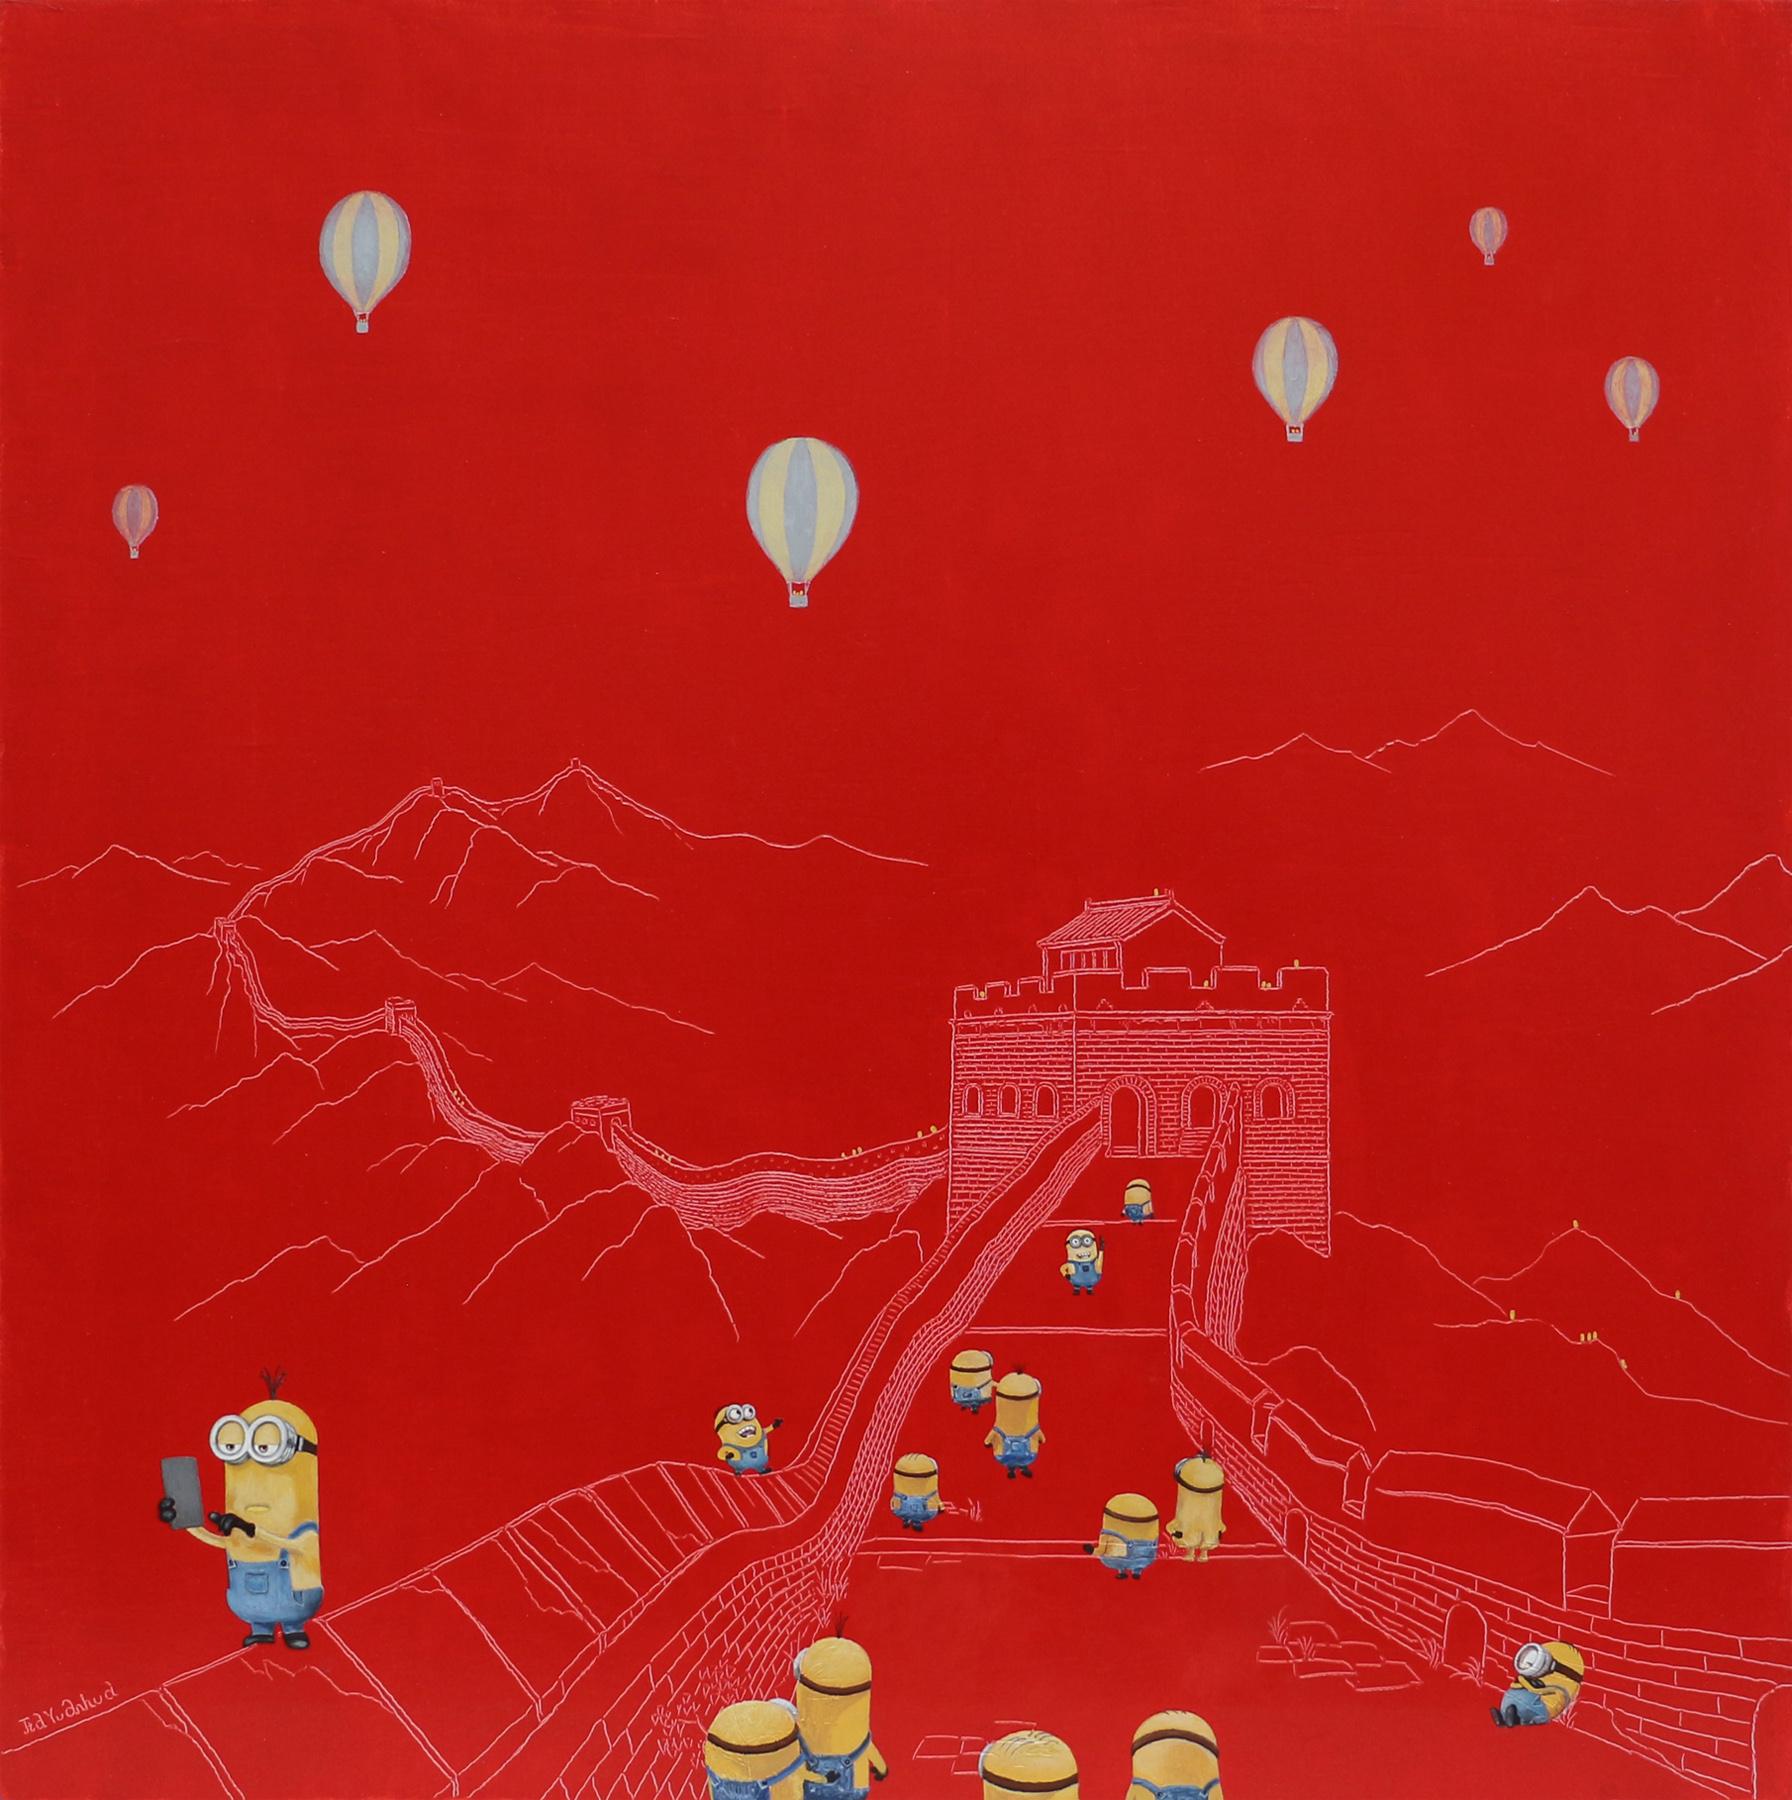 Chinese Contemporary Art by Jia Yuan-Hua - Sightseeing No.8